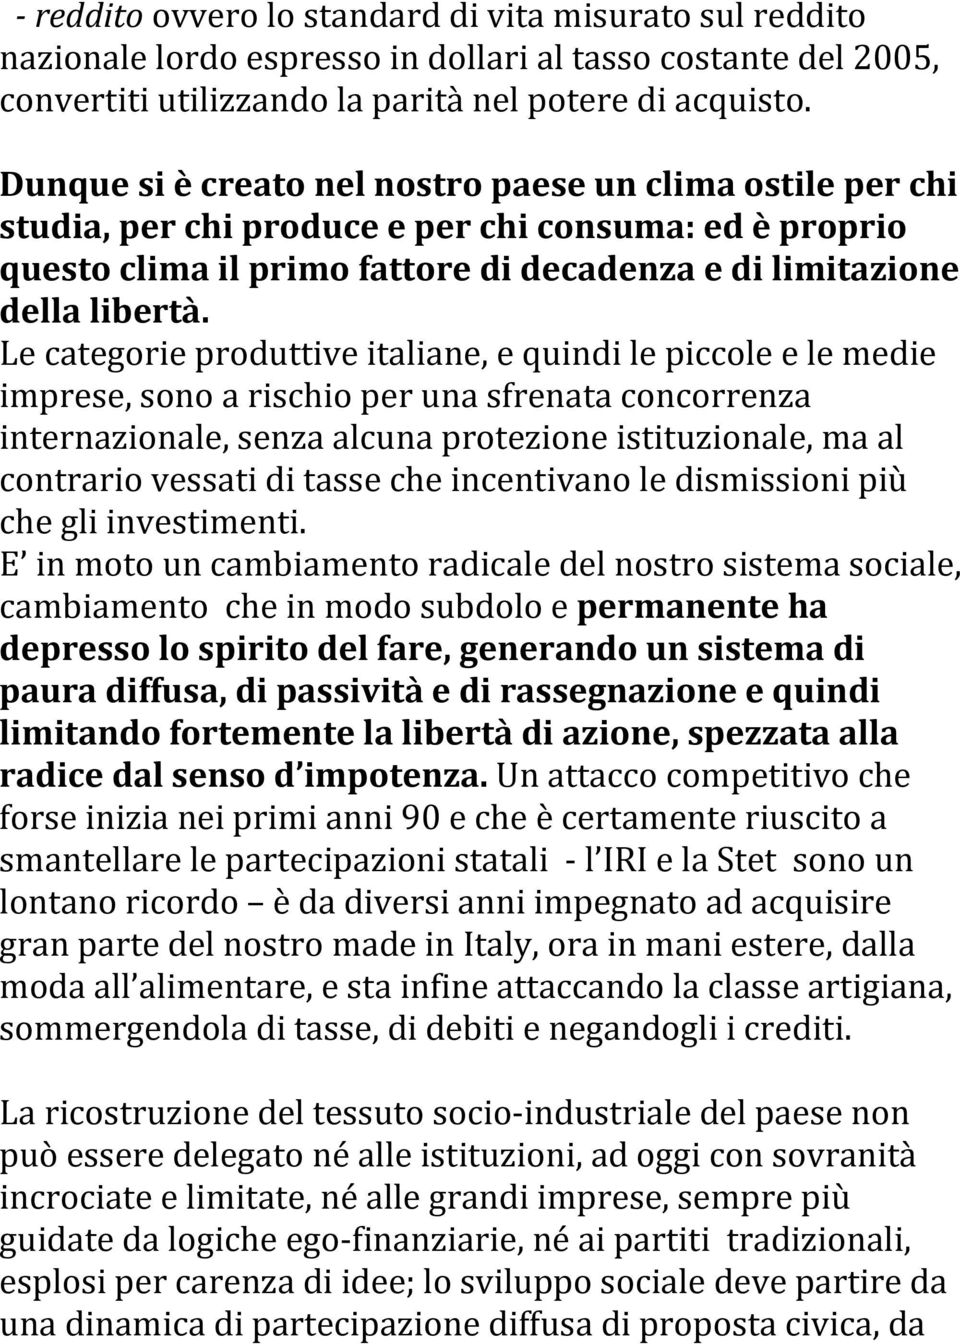 Le categorie produttive italiane, e quindi le piccole e le medie imprese, sono a rischio per una sfrenata concorrenza internazionale, senza alcuna protezione istituzionale, ma al contrario vessati di